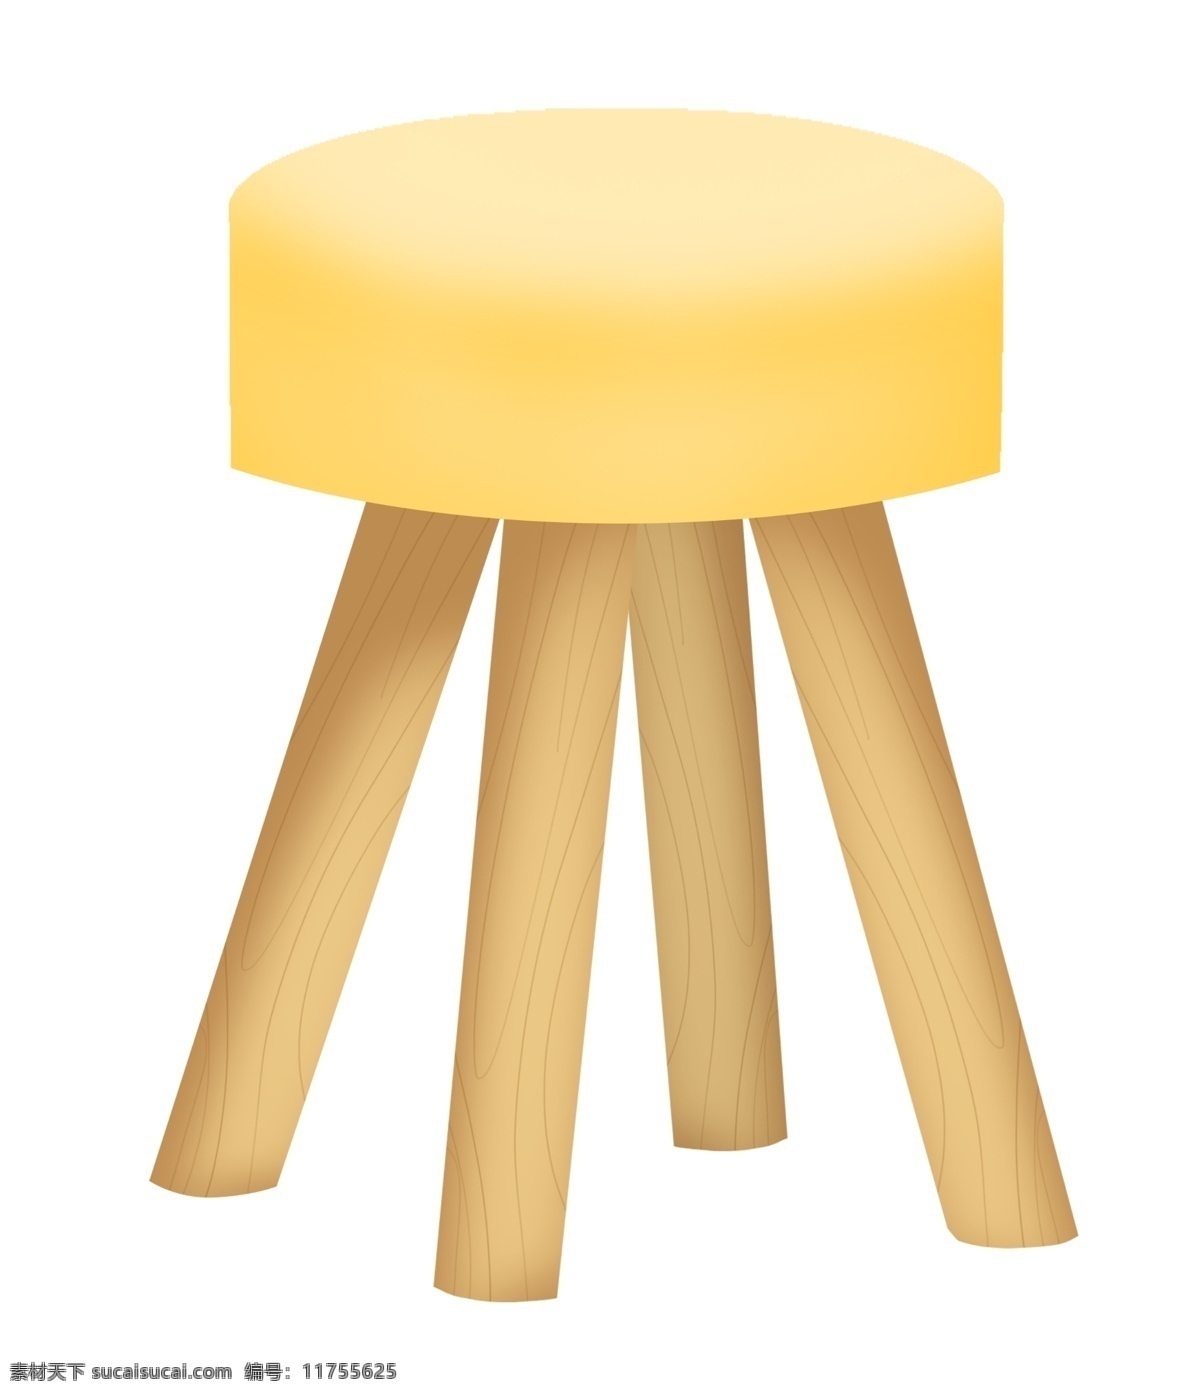 黄色 皮面 椅子 插画 黄色的椅子 卡通插画 家具插画 椅子插画 家具椅子 座位椅子 木质的腿子